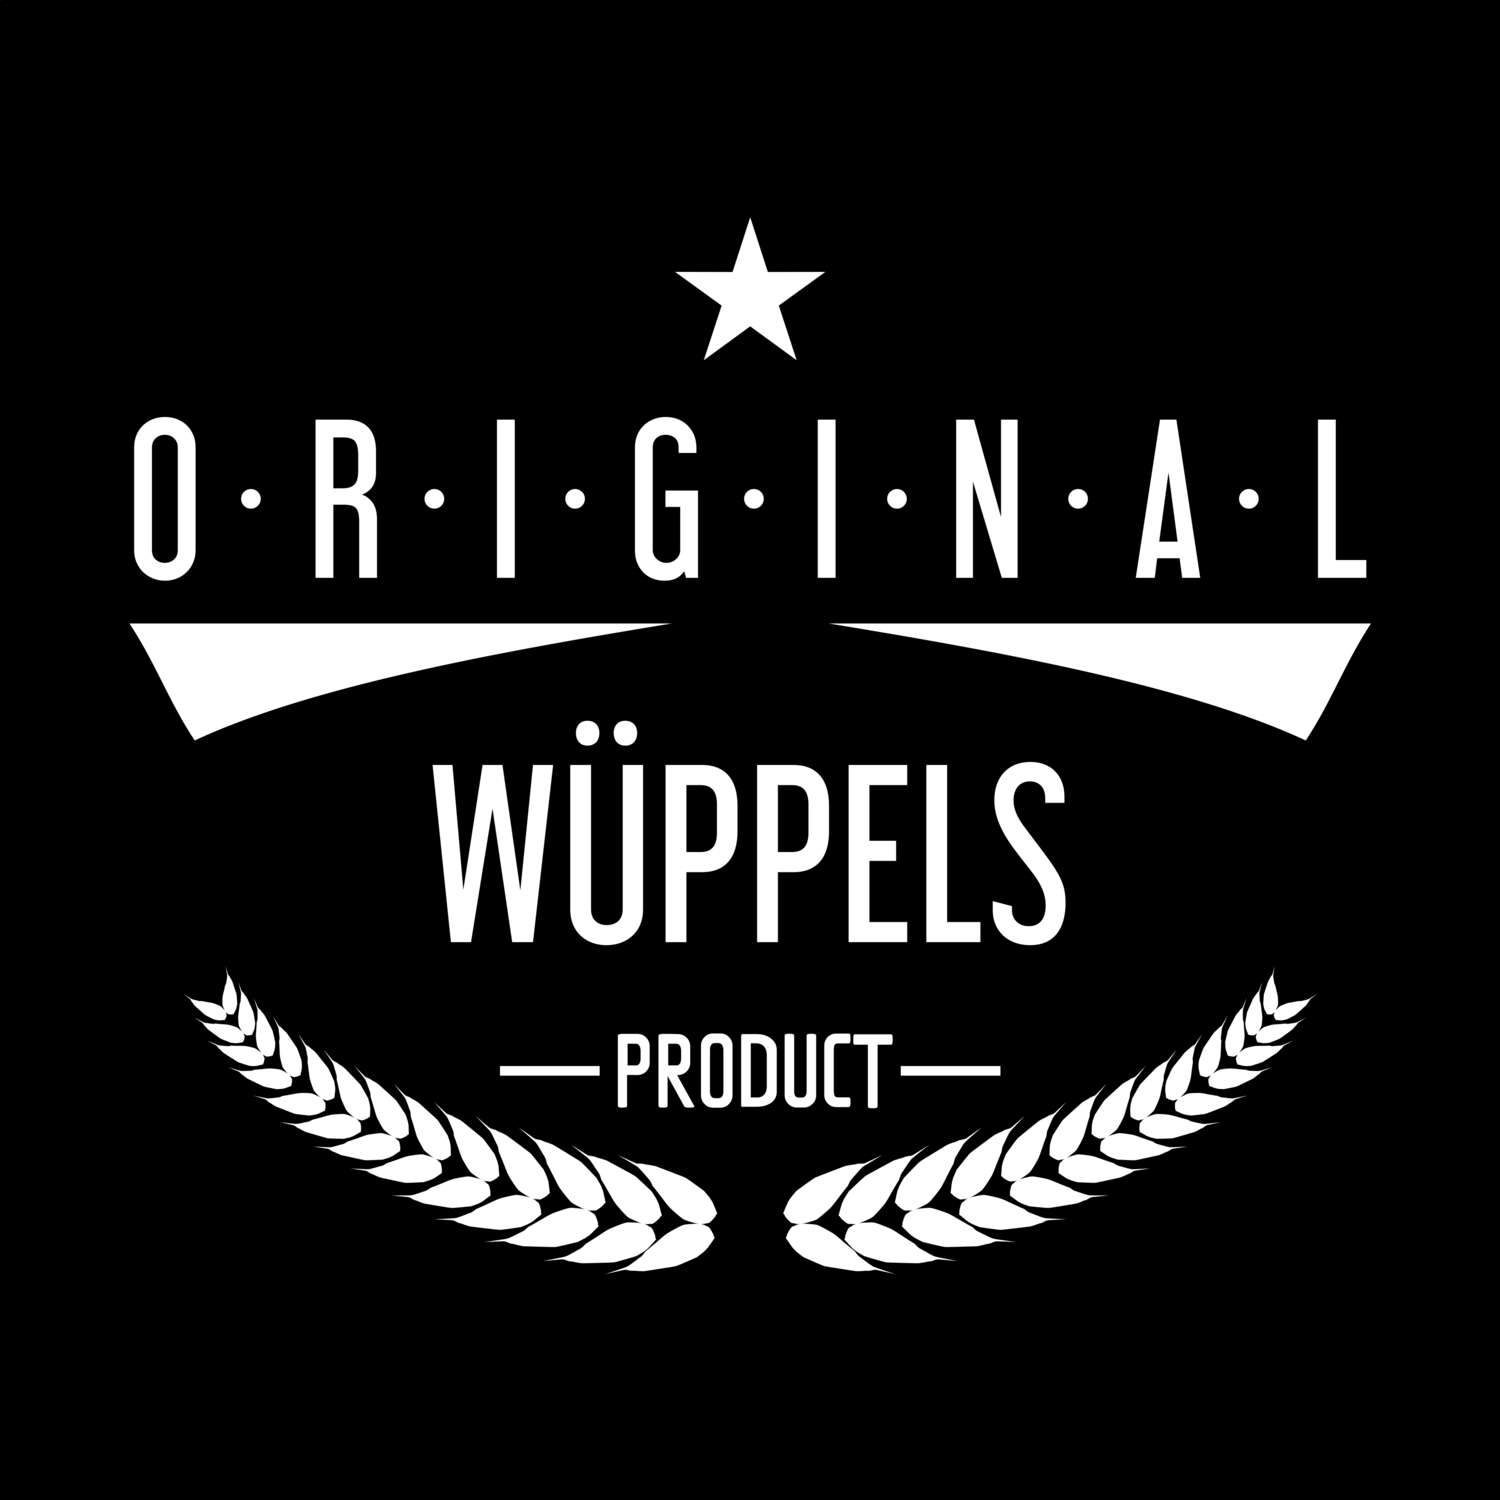 Wüppels T-Shirt »Original Product«